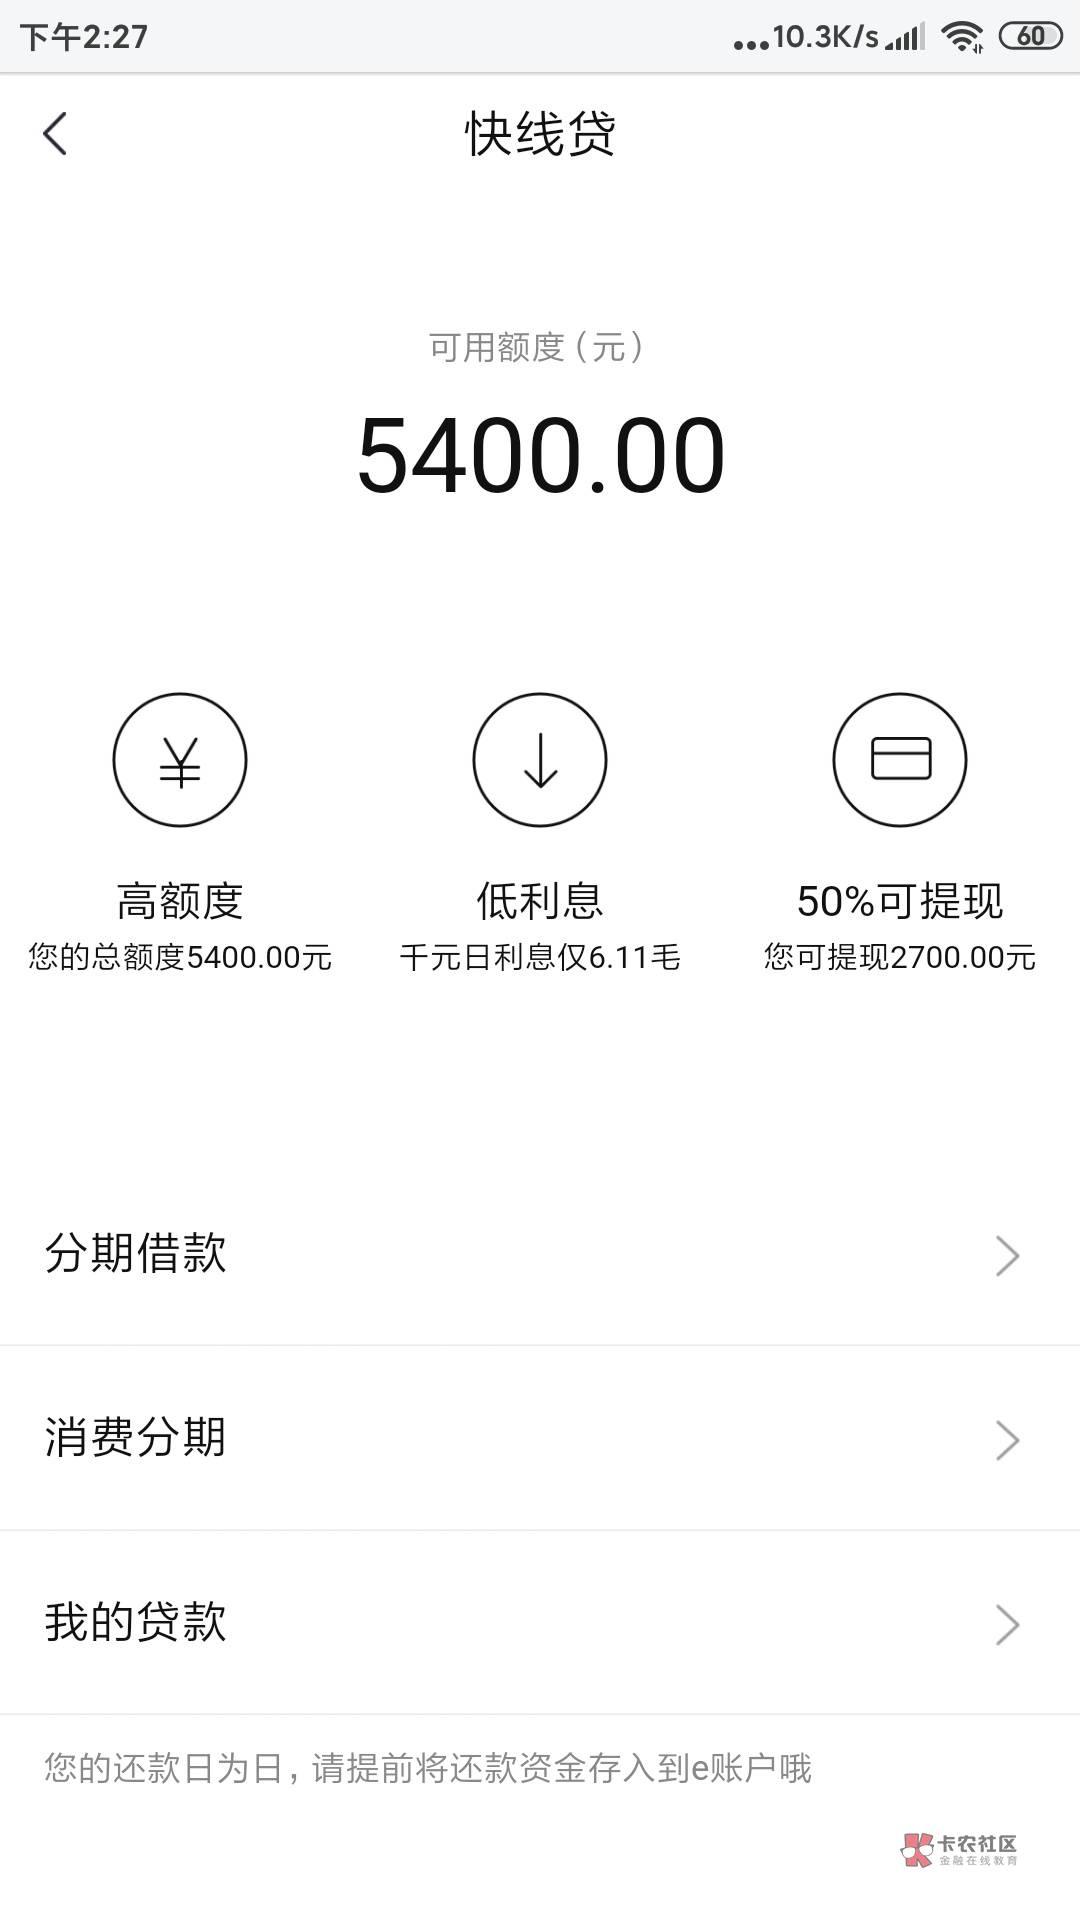 管理加精，上海快线贷下款。今天短信邀请，我以为是骗...7 / 作者:不想再来一次 / 